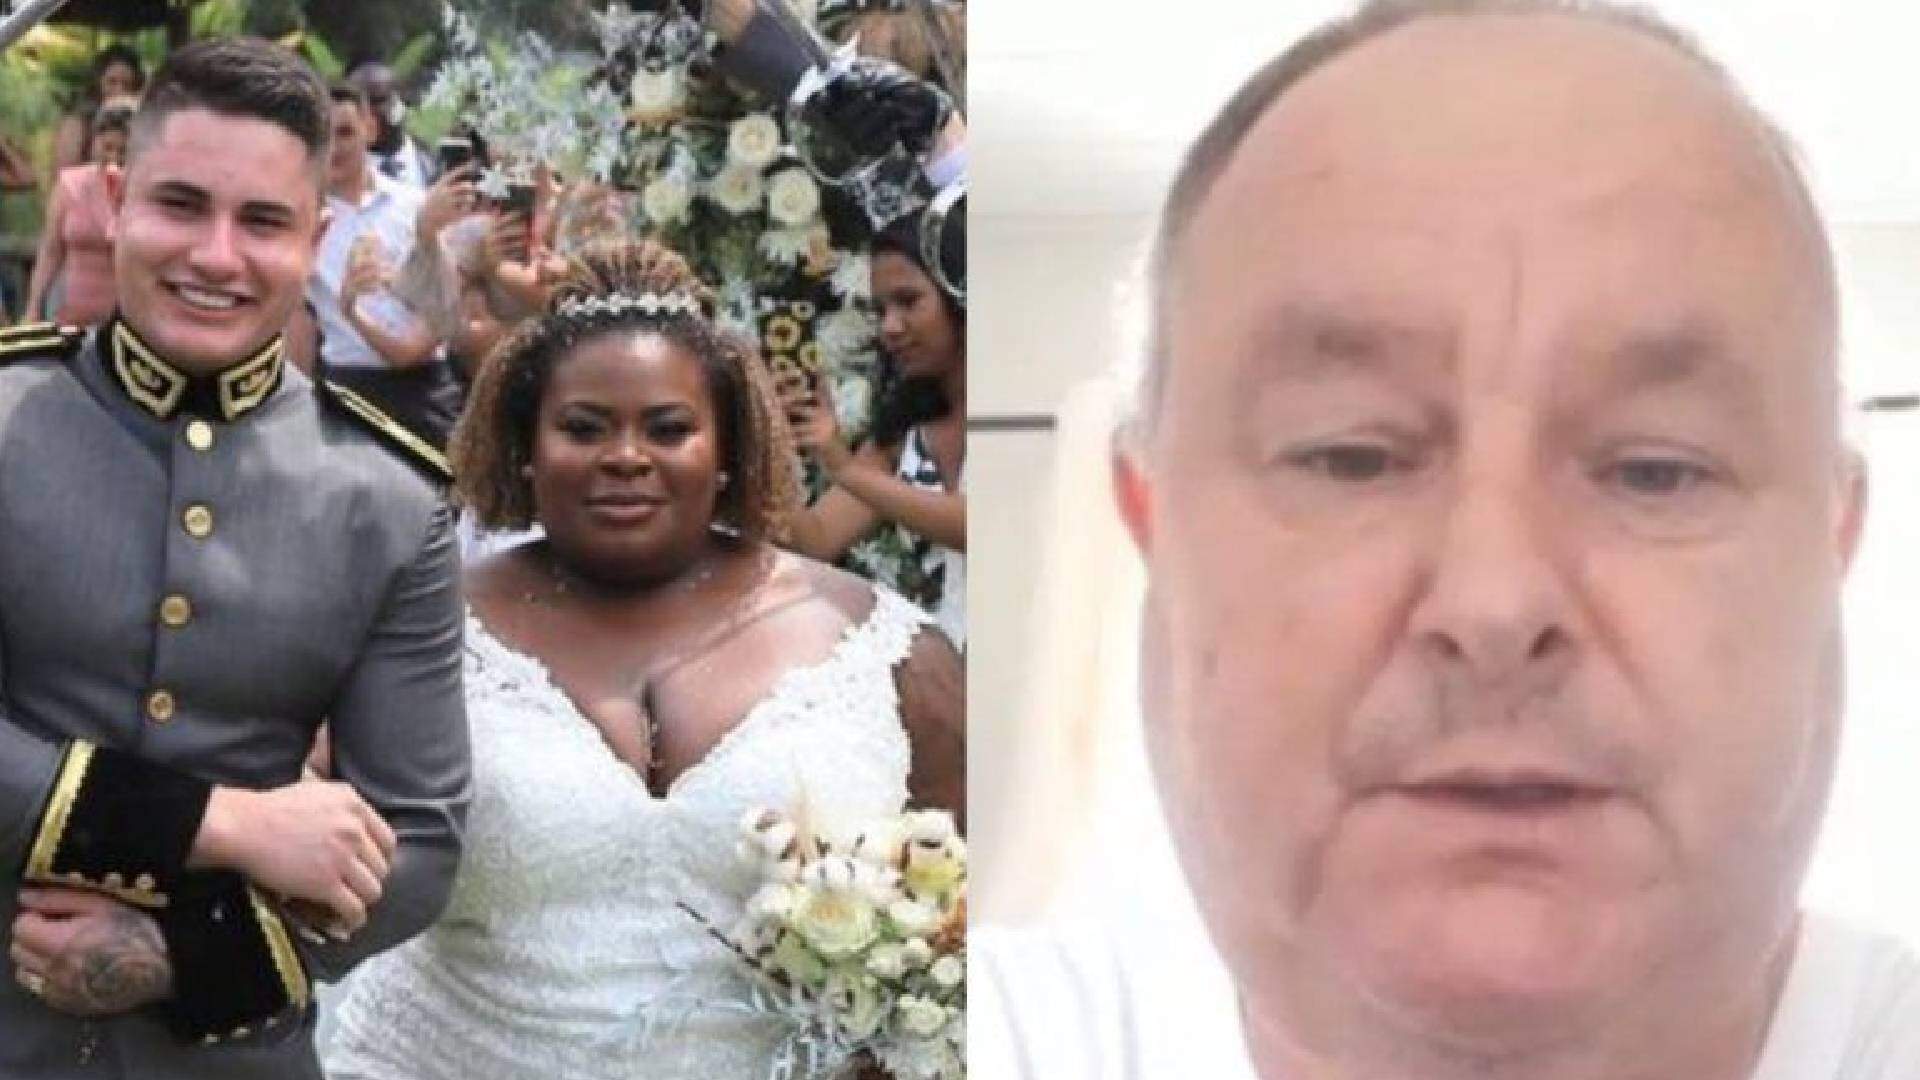 Sogro de Jojo Todynho faz revelação inusitada após cerimônia do casamento: “Me deixou muito traumatizado” - Metropolitana FM